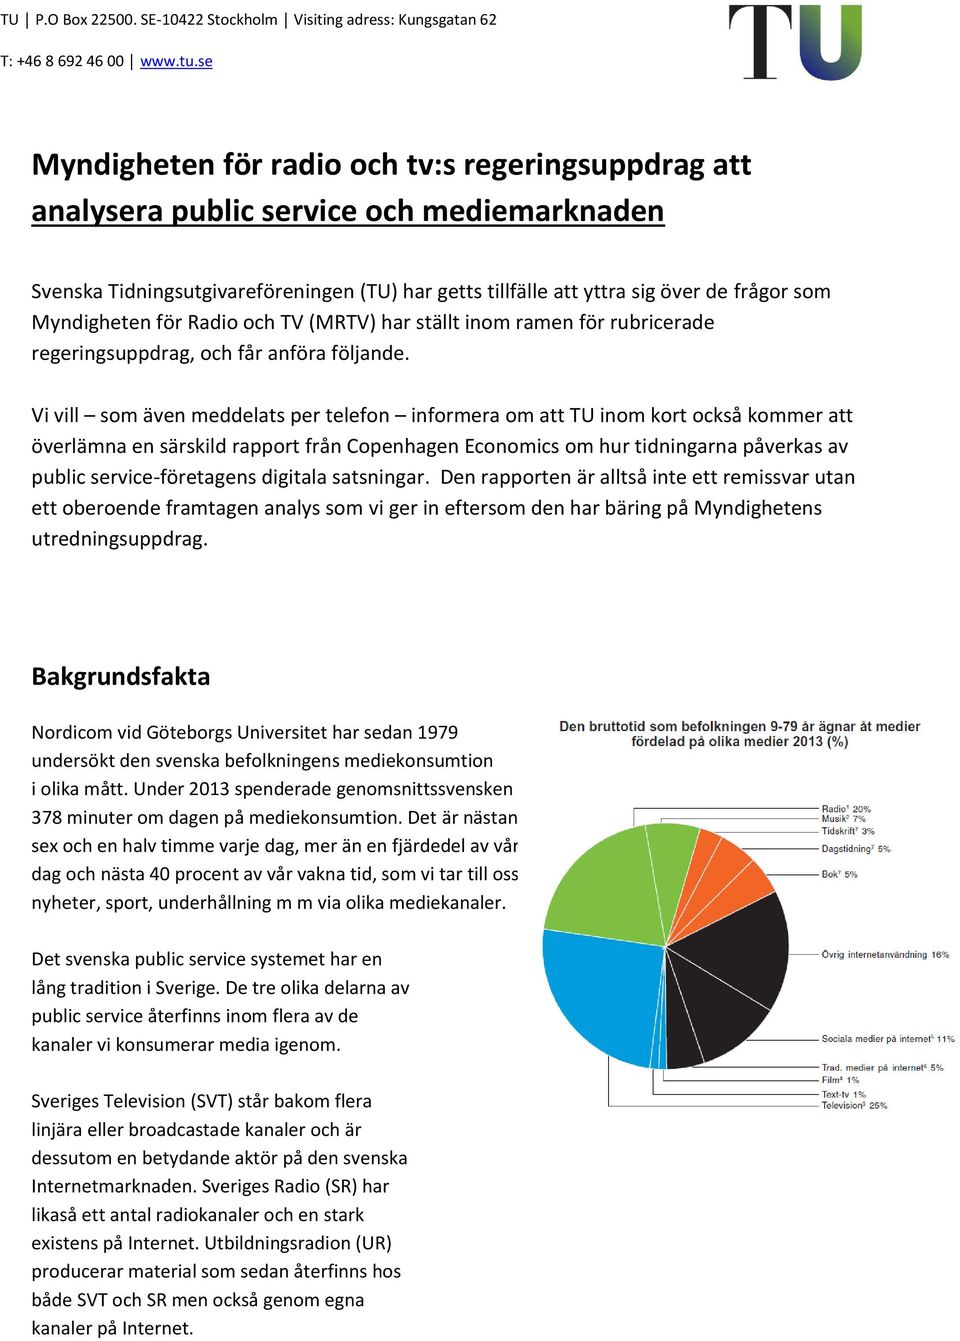 Vi vill som även meddelats per telefon informera om att TU inom kort också kommer att överlämna en särskild rapport från Copenhagen Economics om hur tidningarna påverkas av public service-företagens